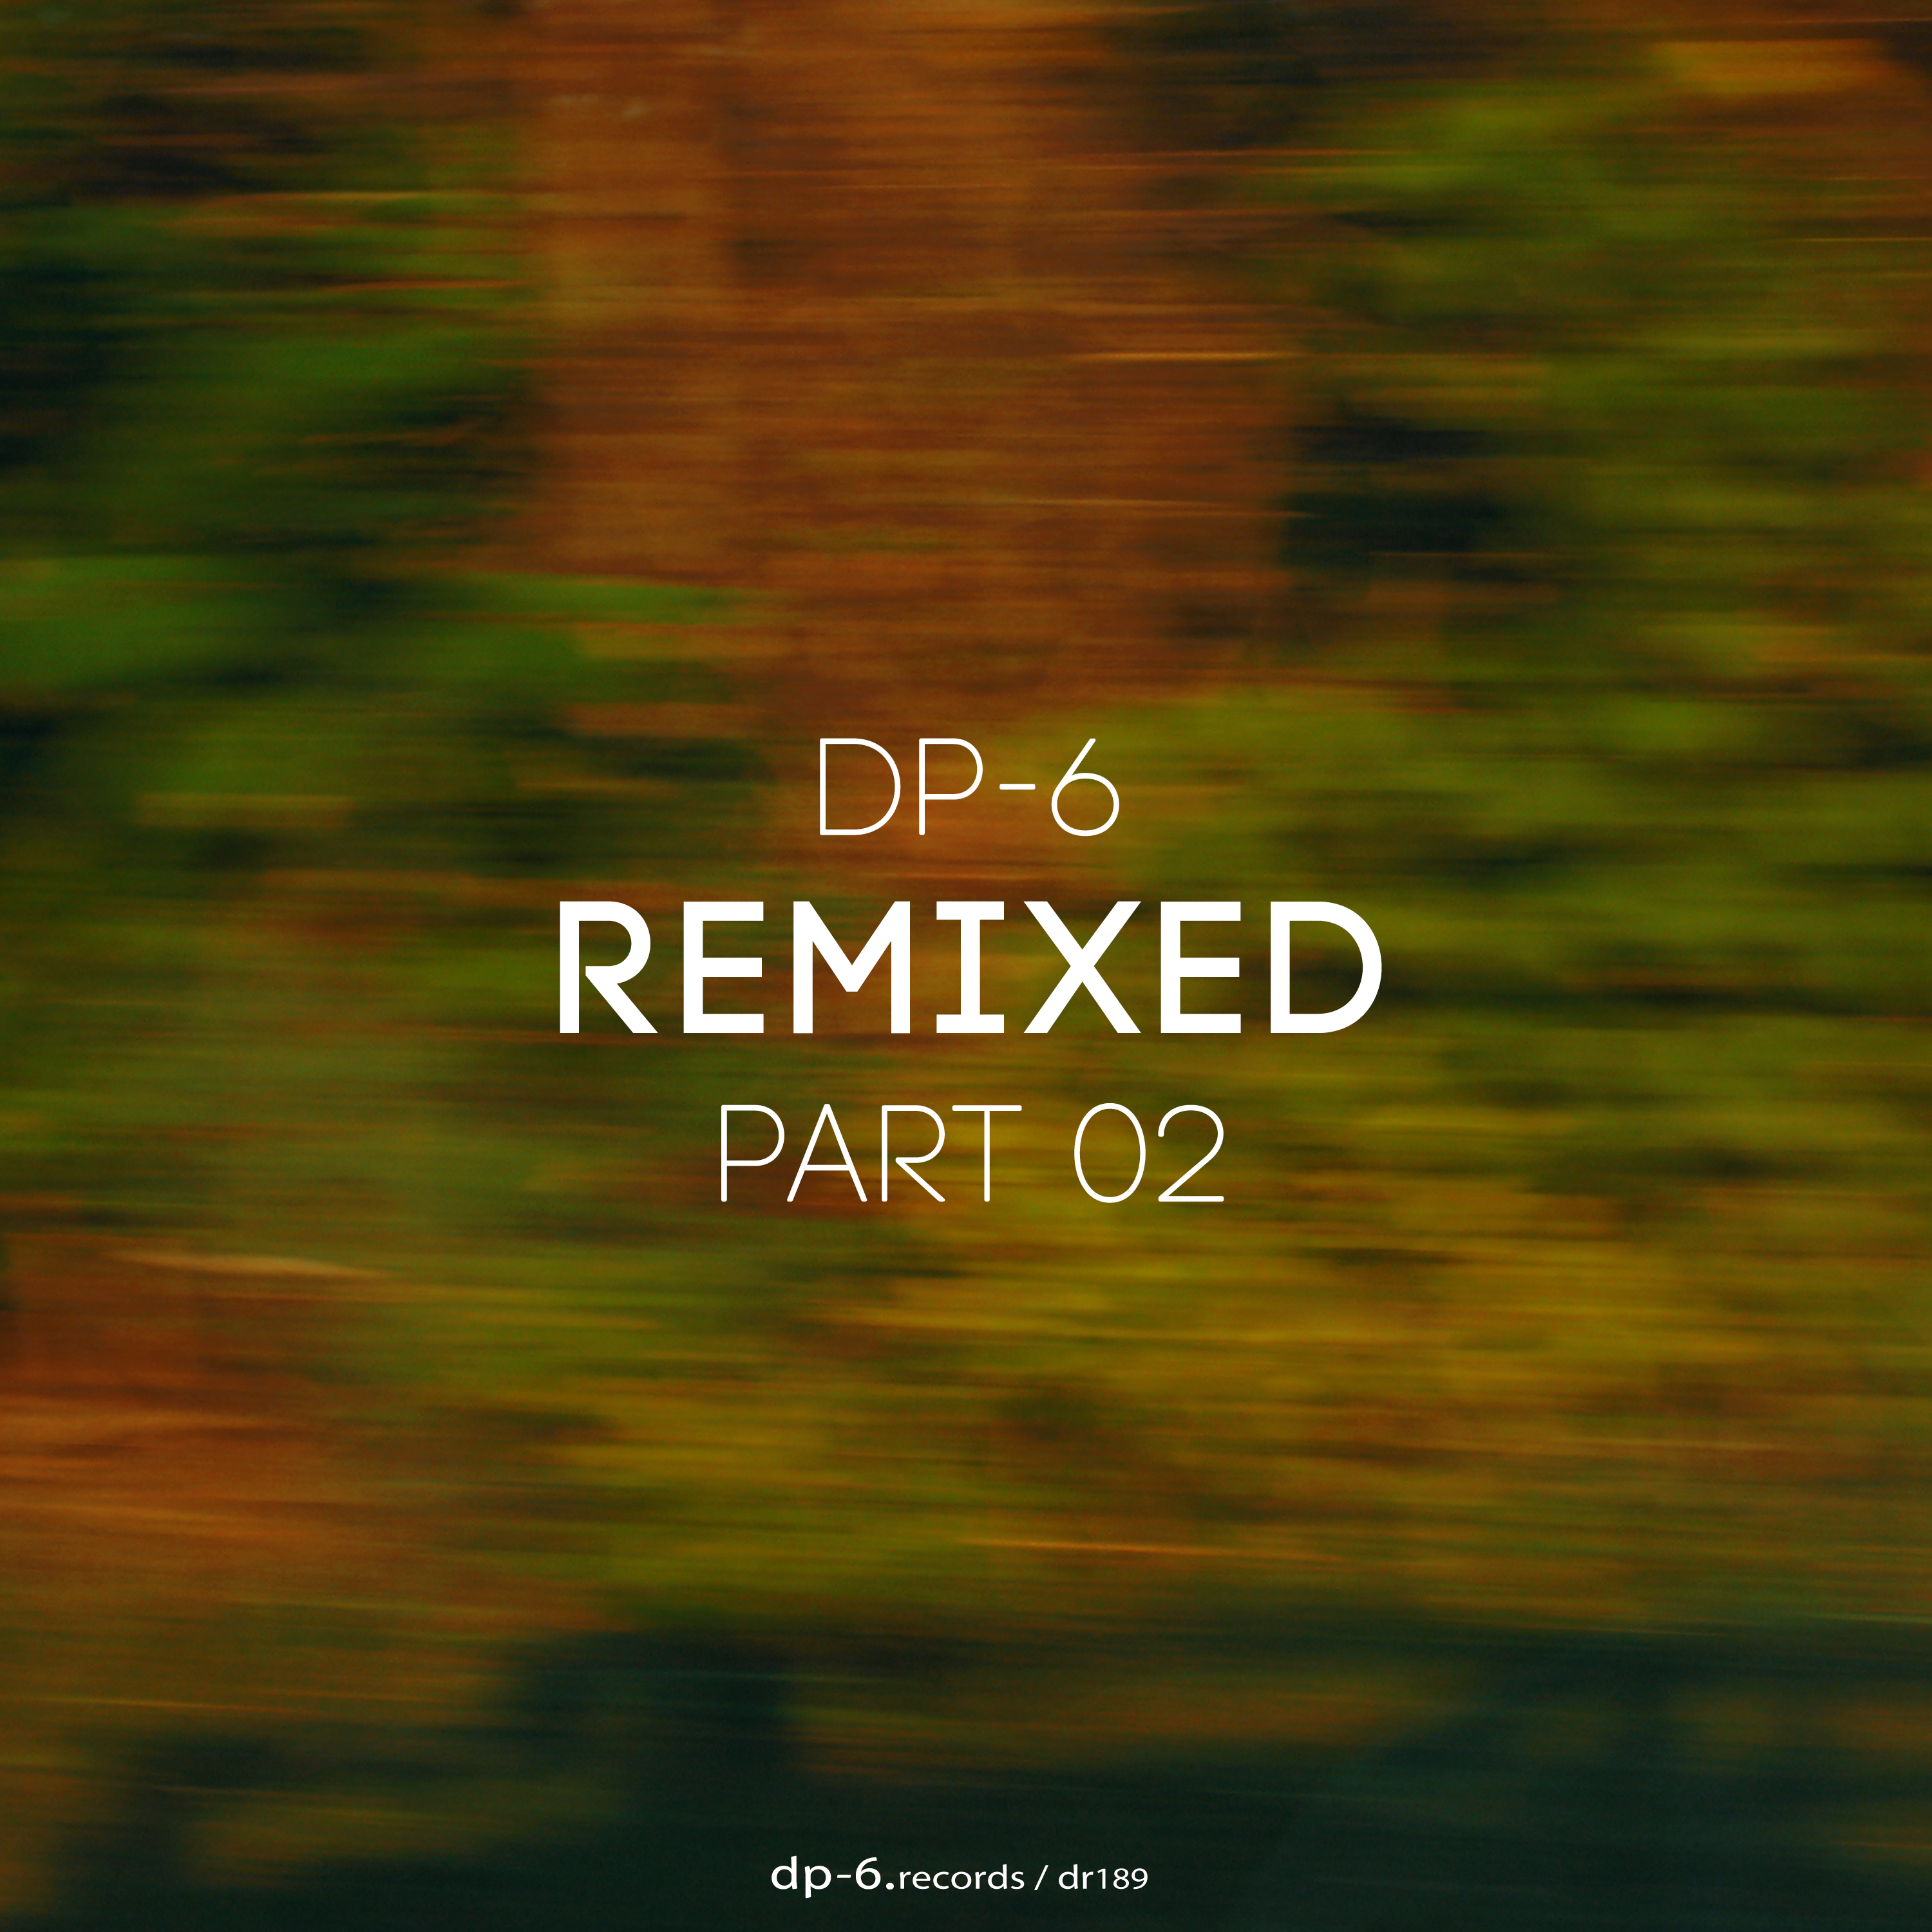 DP-6: Remixed part 02